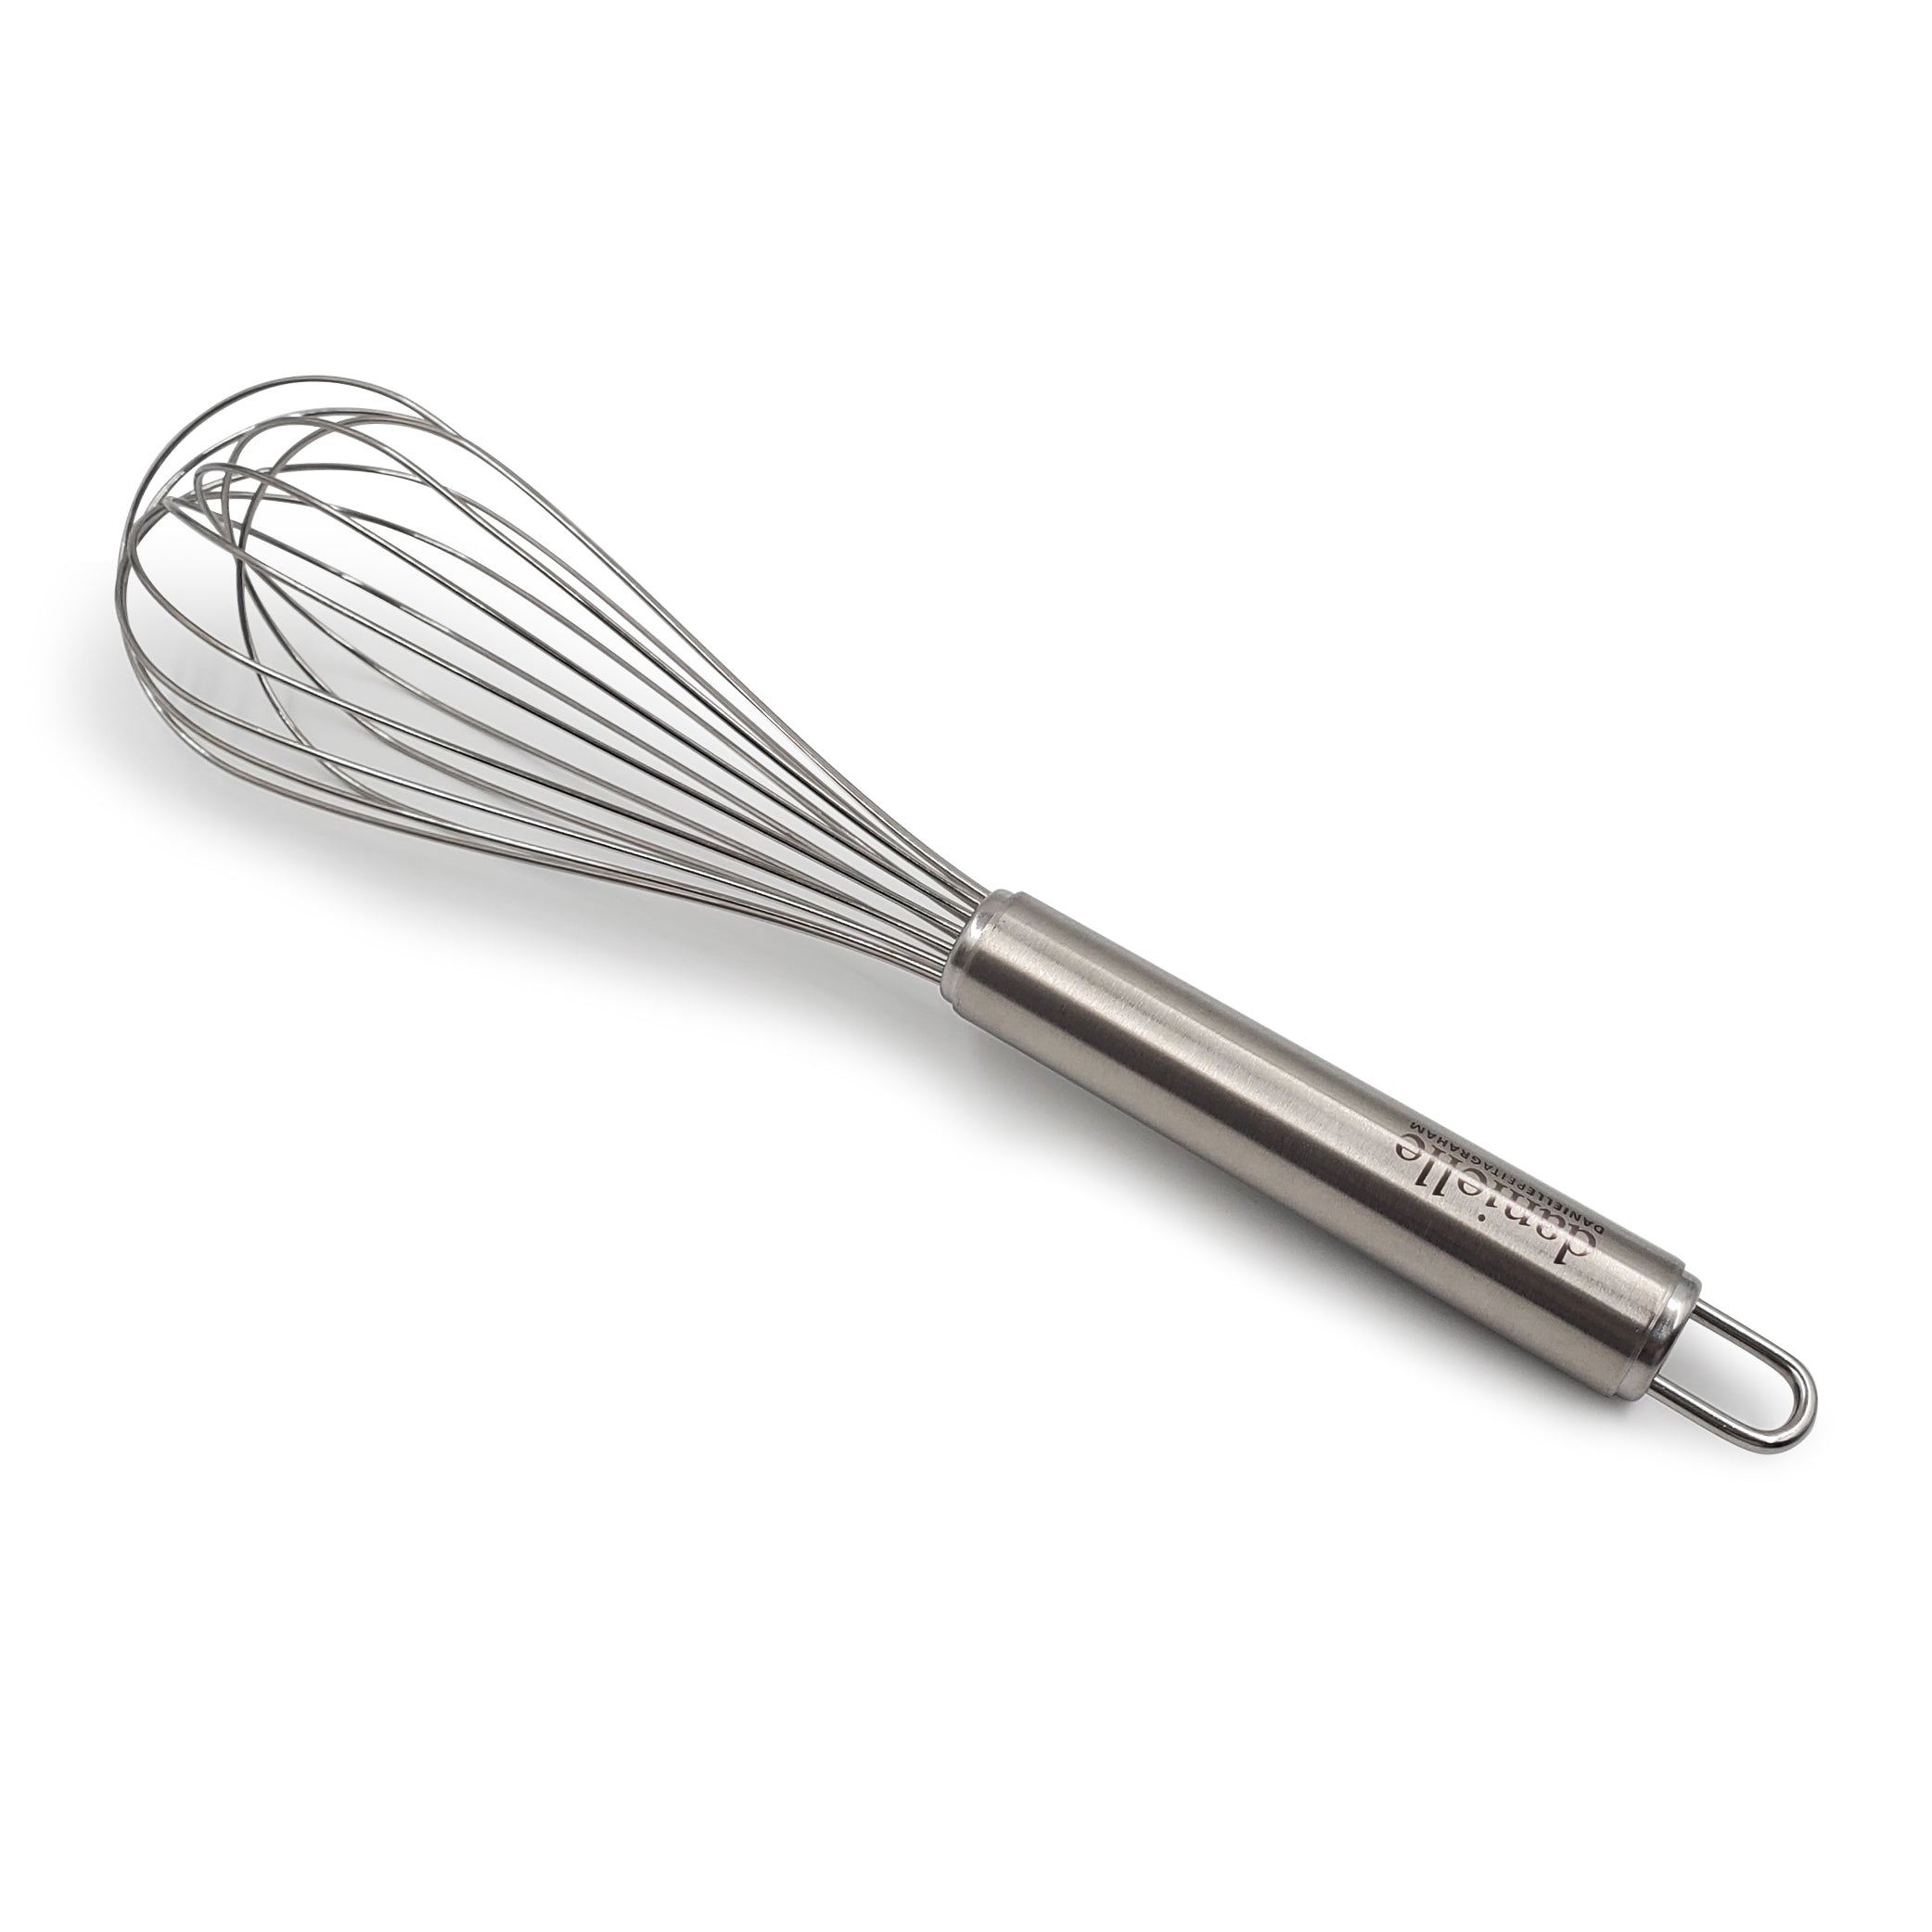 Essential Kitchen Utensils - Stainless Steel Whisk – www